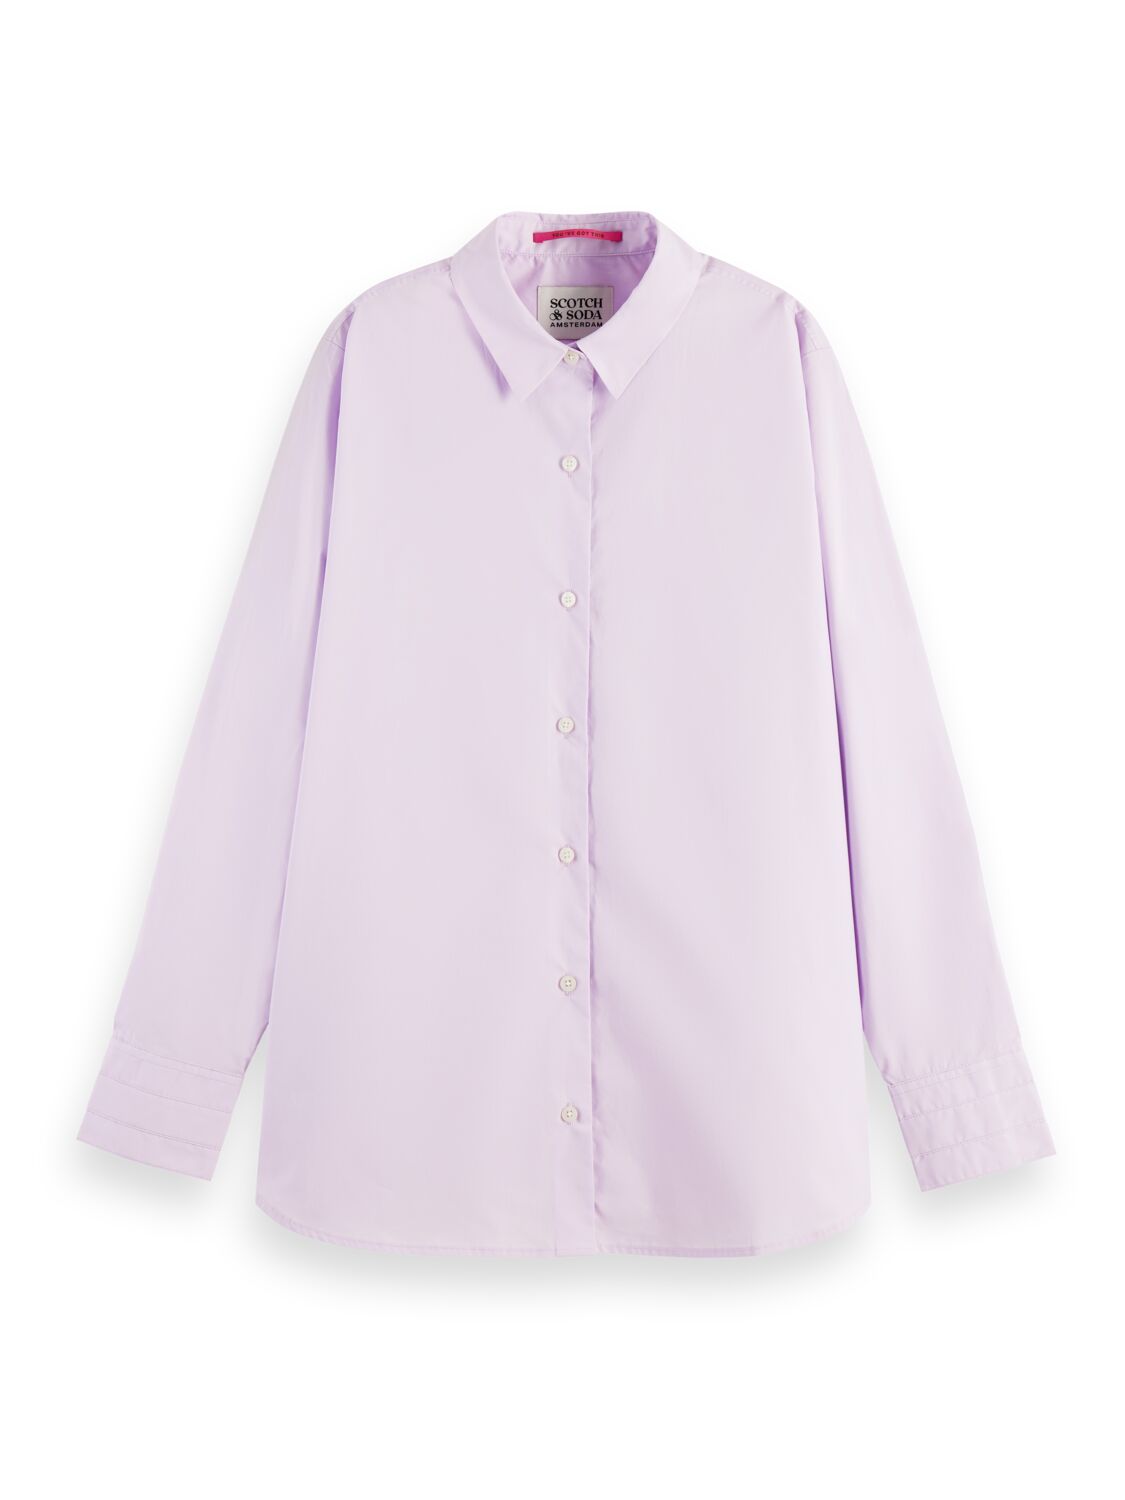 Рубашка женская Scotch & Soda 167826/1179 фиолетовая M